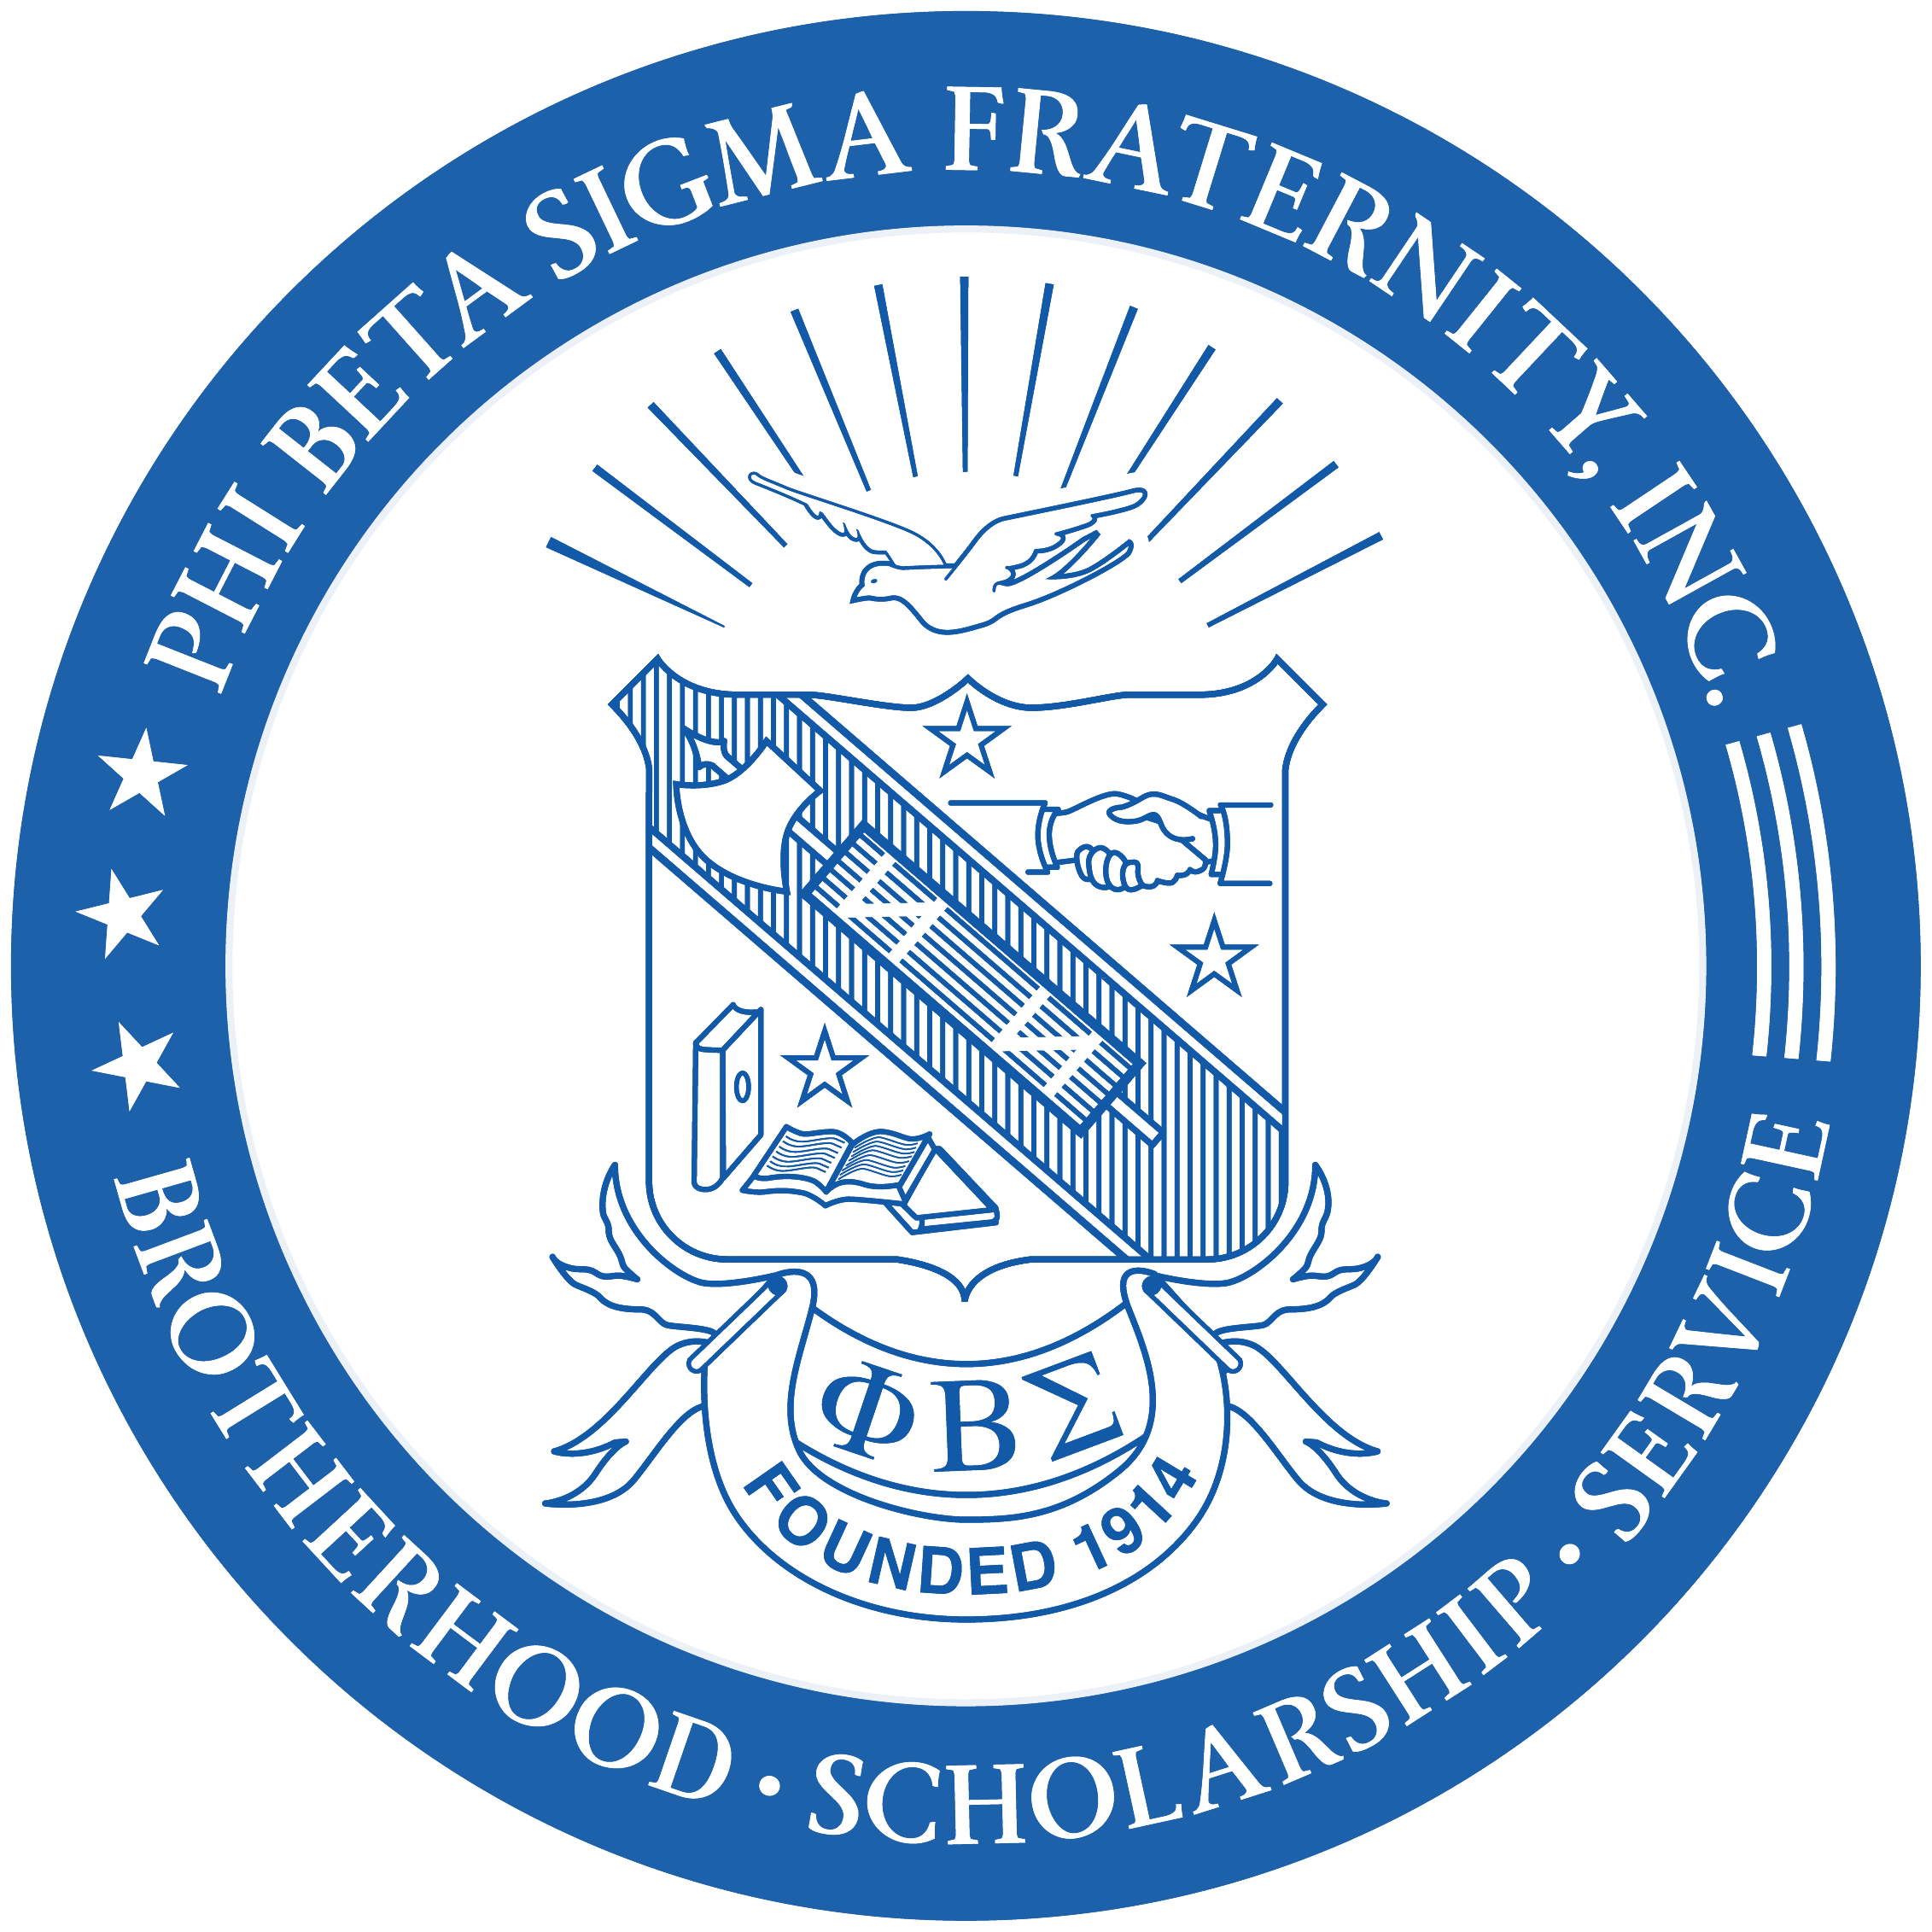 Phi Beta Sigma shield